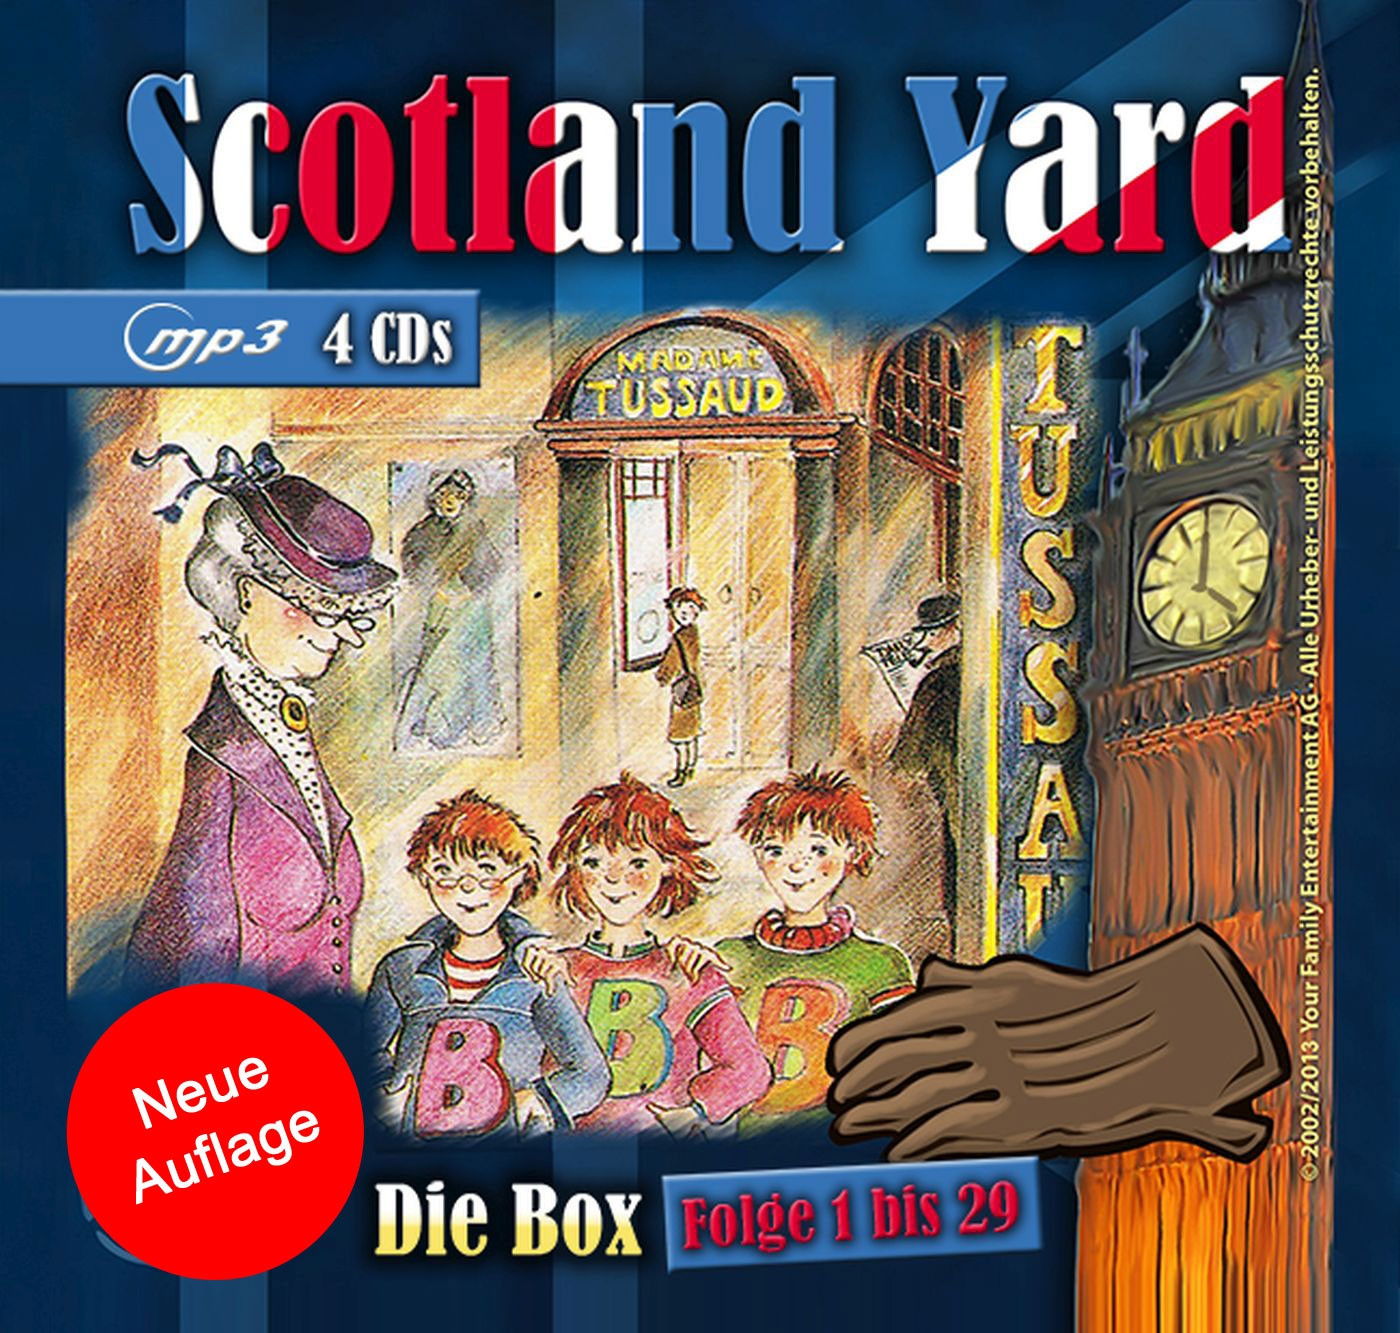 Scotland Yard - Die Box - Folge 1 bis 29 - Neue Auflage